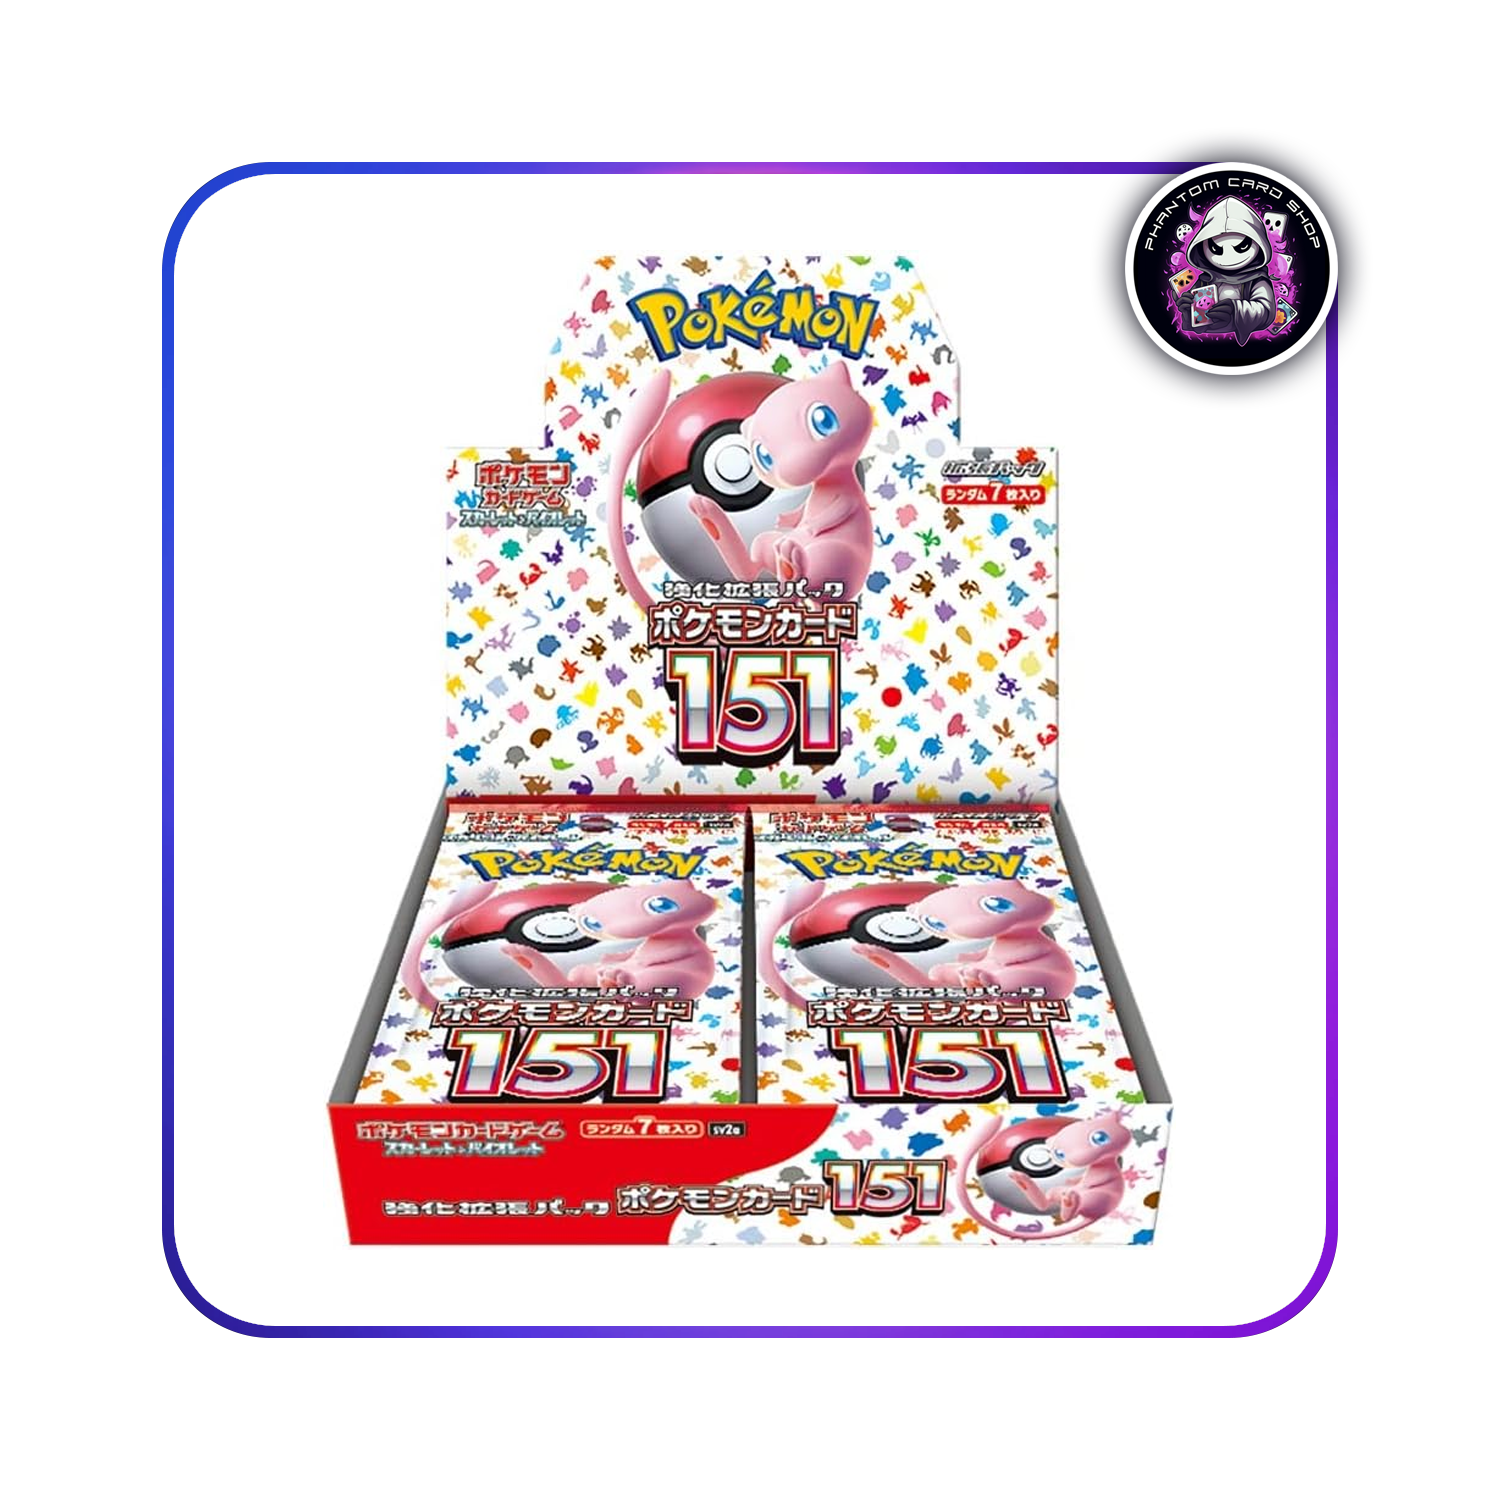 Pokémon 151 Booster Box (sv2a) [JP]